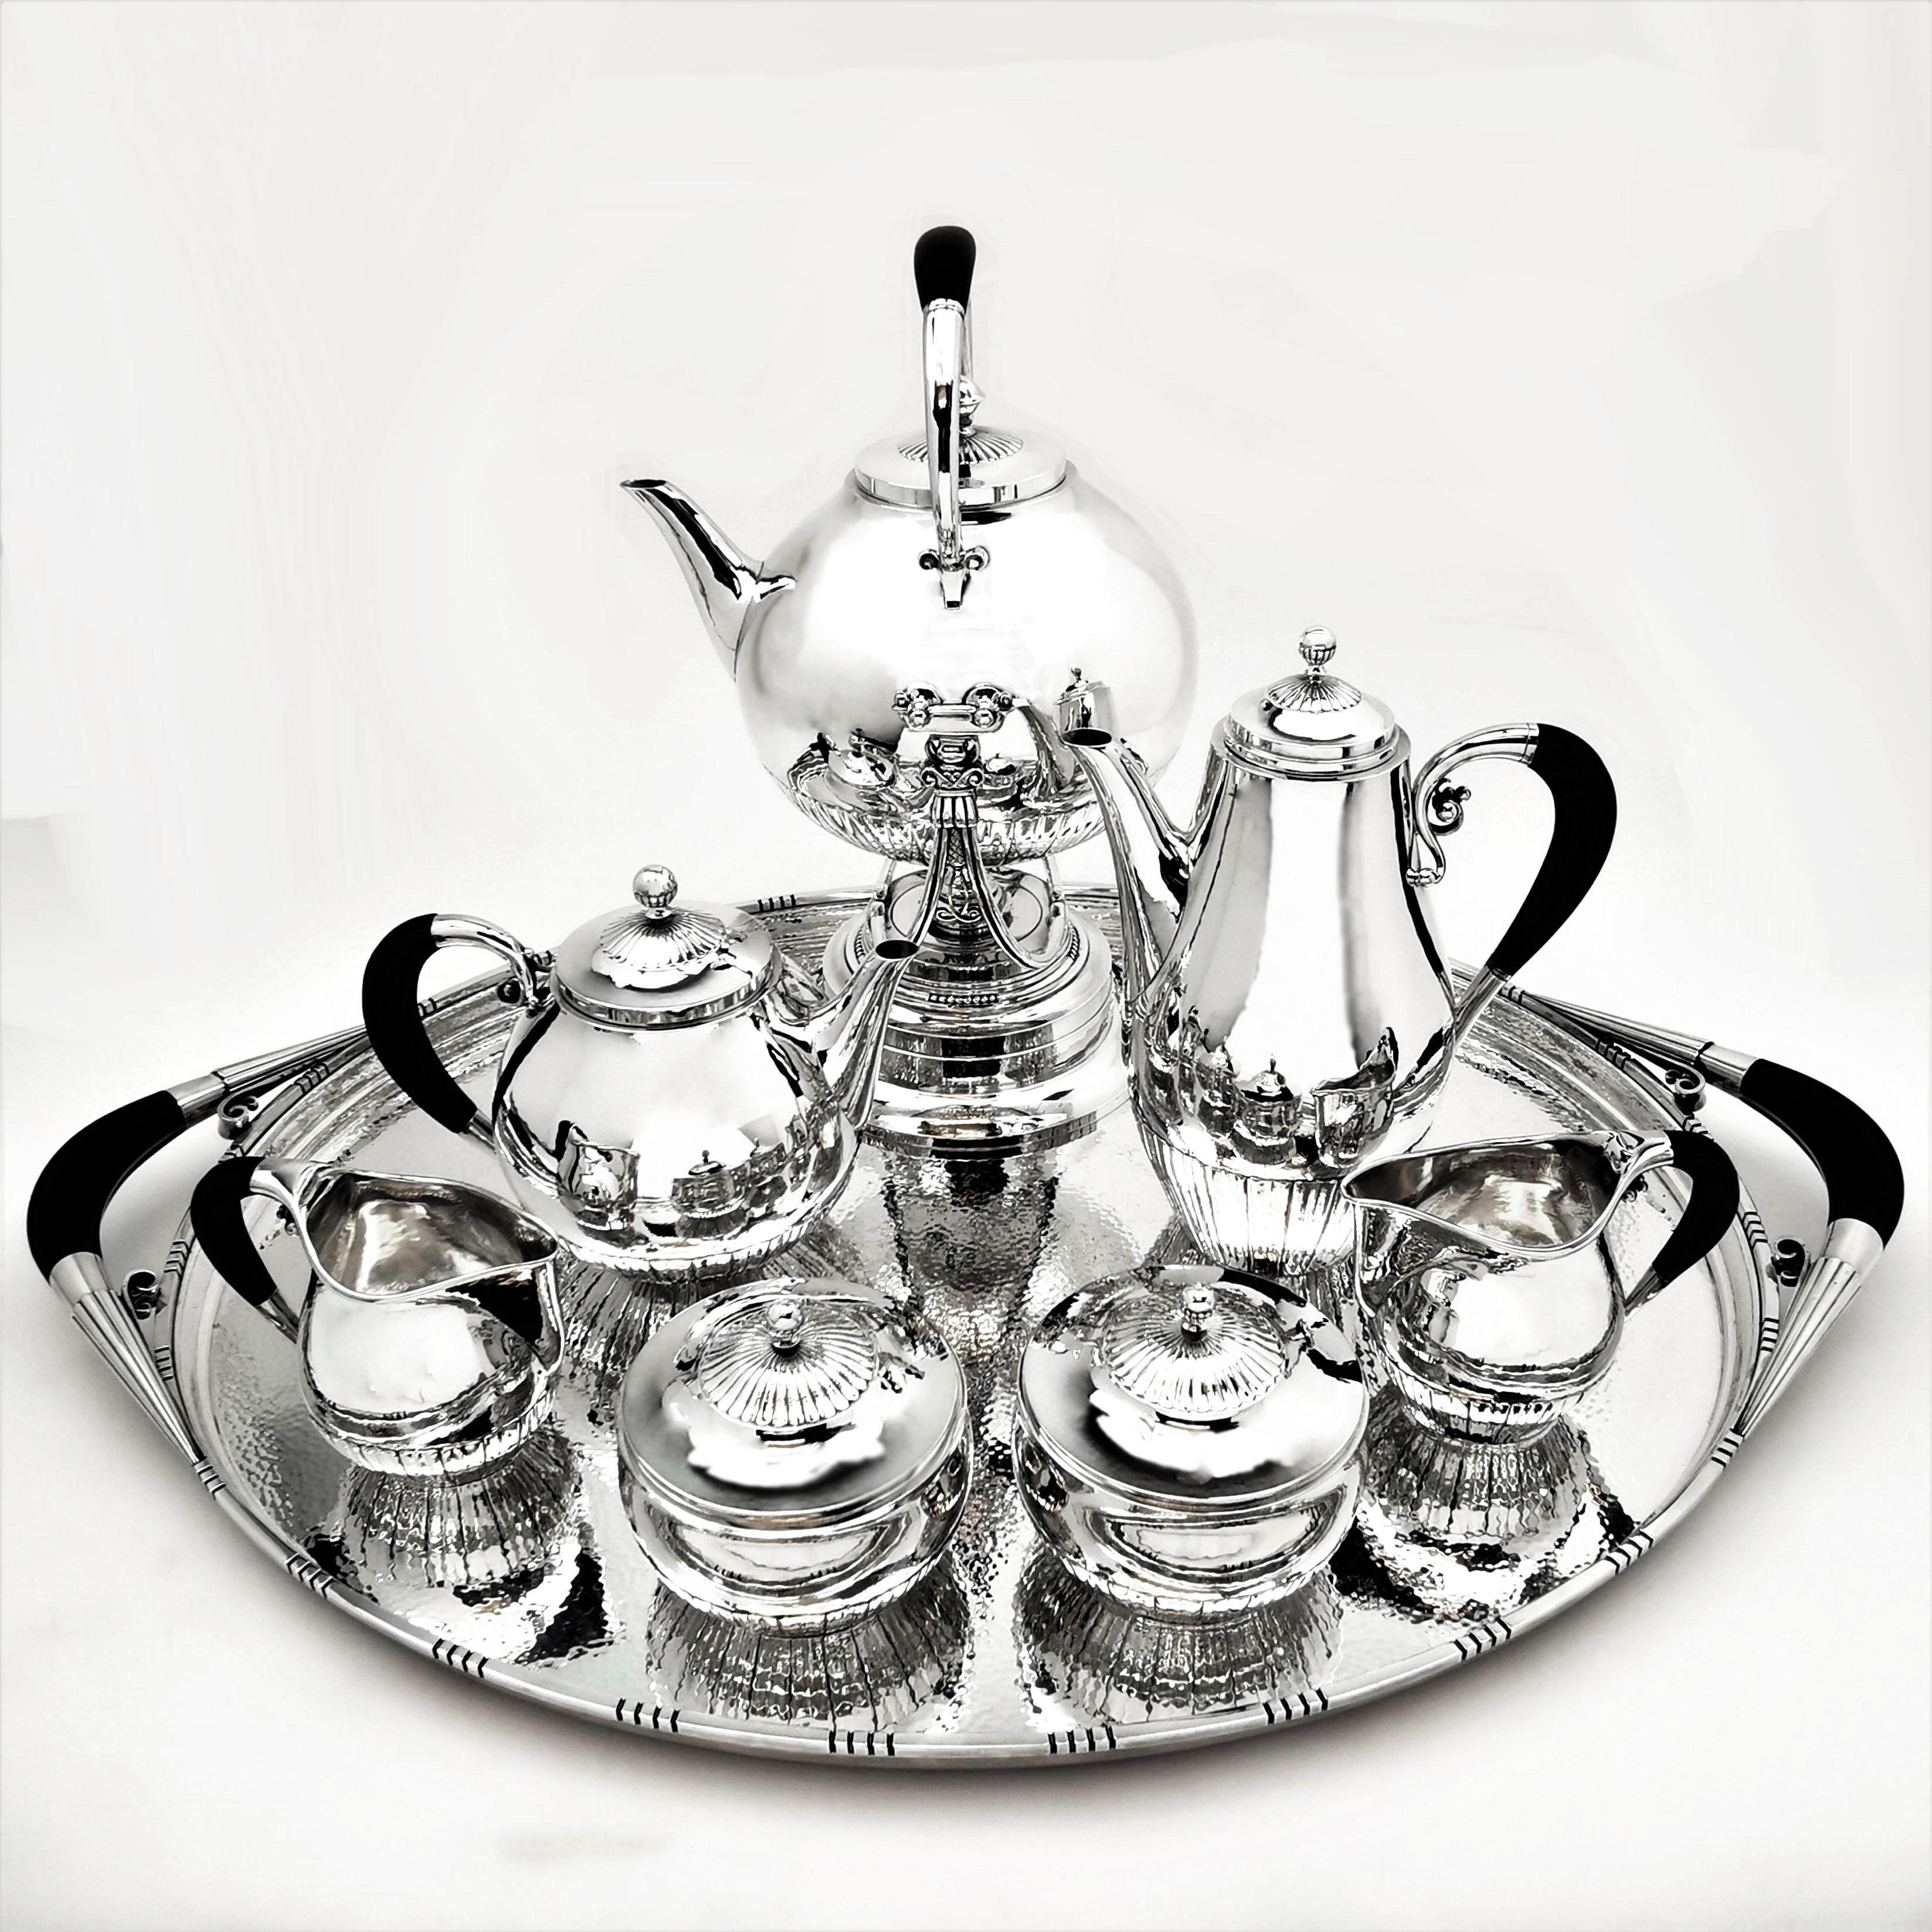 Ein prächtiges dänisches 8-teiliges Tee- und Kaffeeset von Georg Jensen mit dem Cosmos-Muster. Das Set besteht aus einem Wasserkocher auf Ständer, einer Kaffeekanne, einer Teekanne, zwei Milch-/Sahnekännchen und zwei Zuckerdosen mit Deckel auf einem